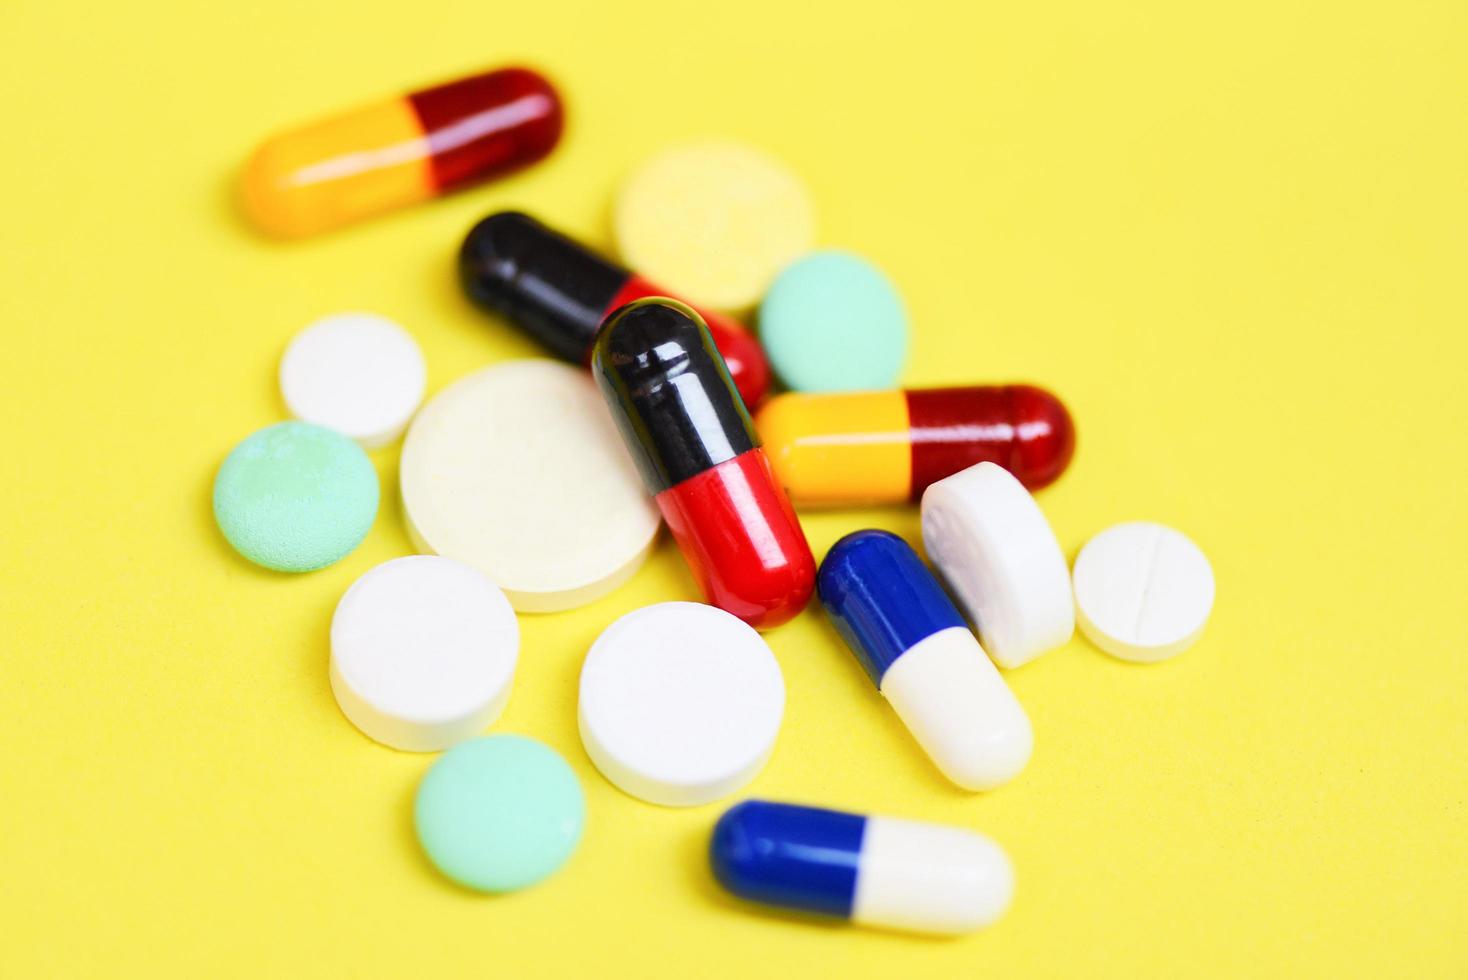 kapsel piller - många färgglada blandade farmaceutiska medicin piller kapsel läkemedel koncept foto